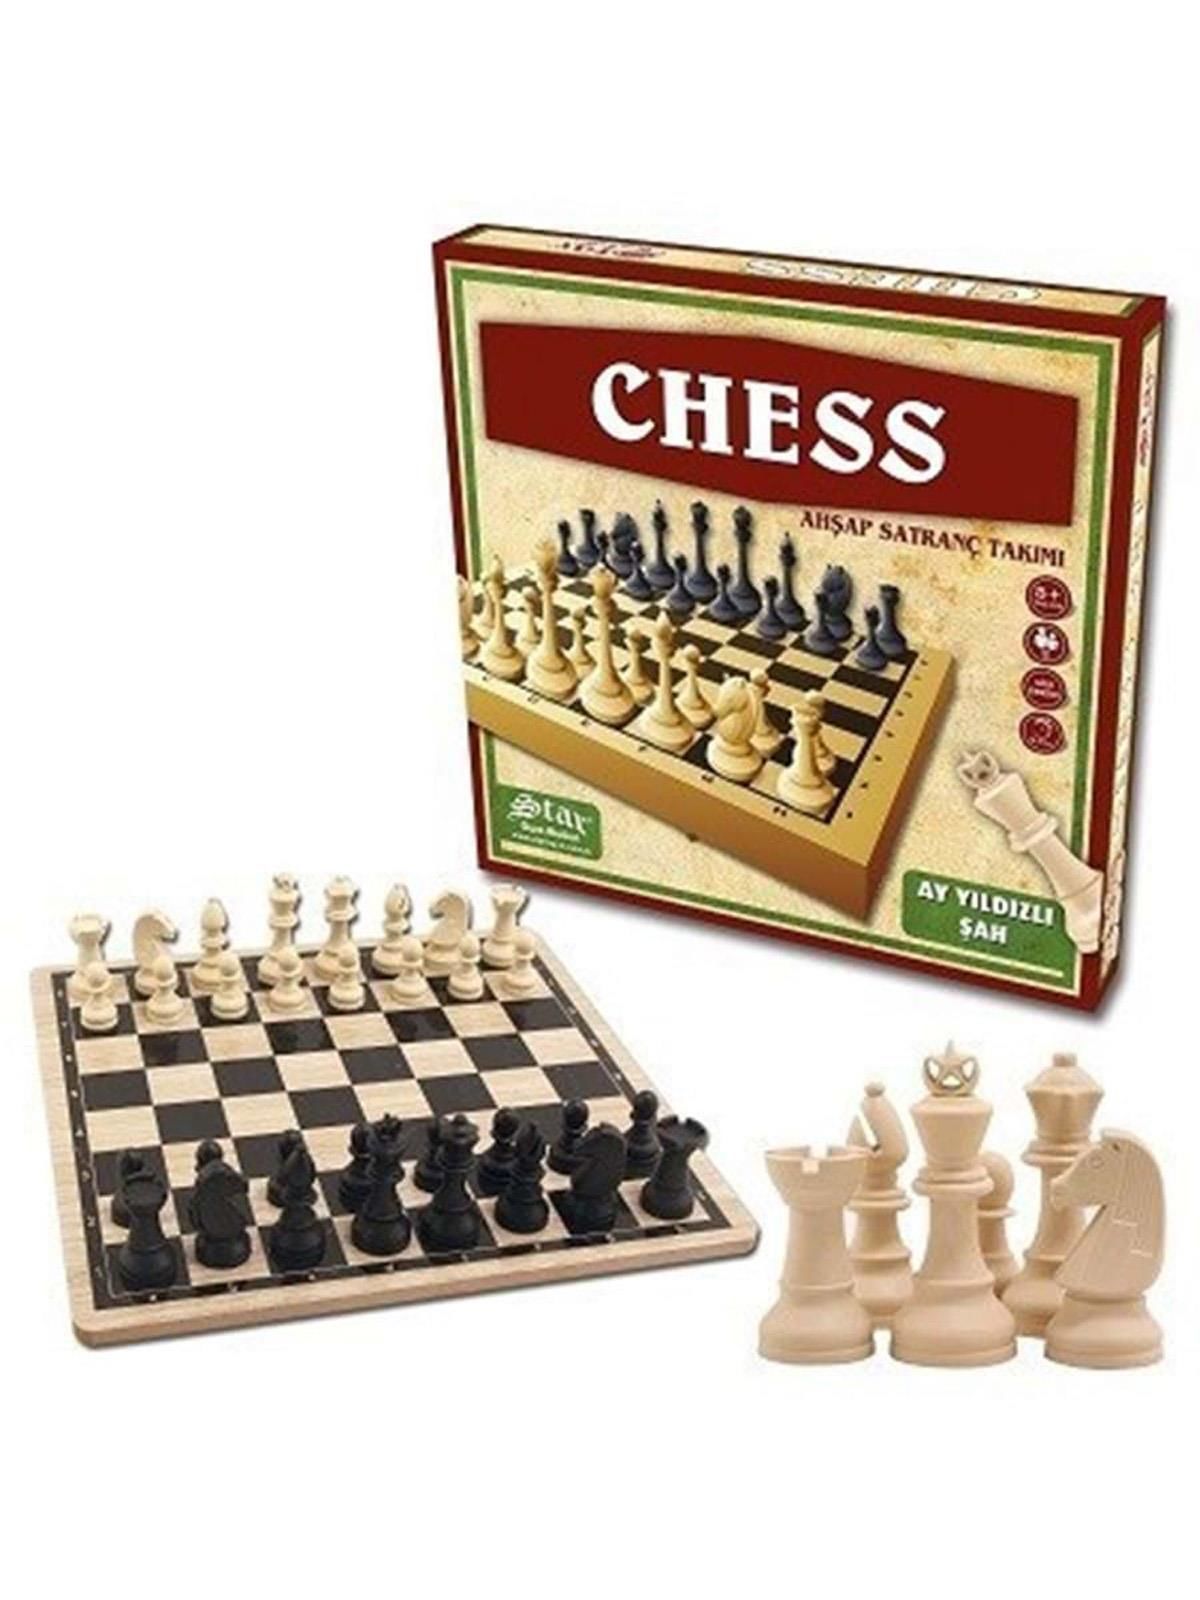 Star Chess Ahşap Satranç Takımı 1050859 (1 Adet)